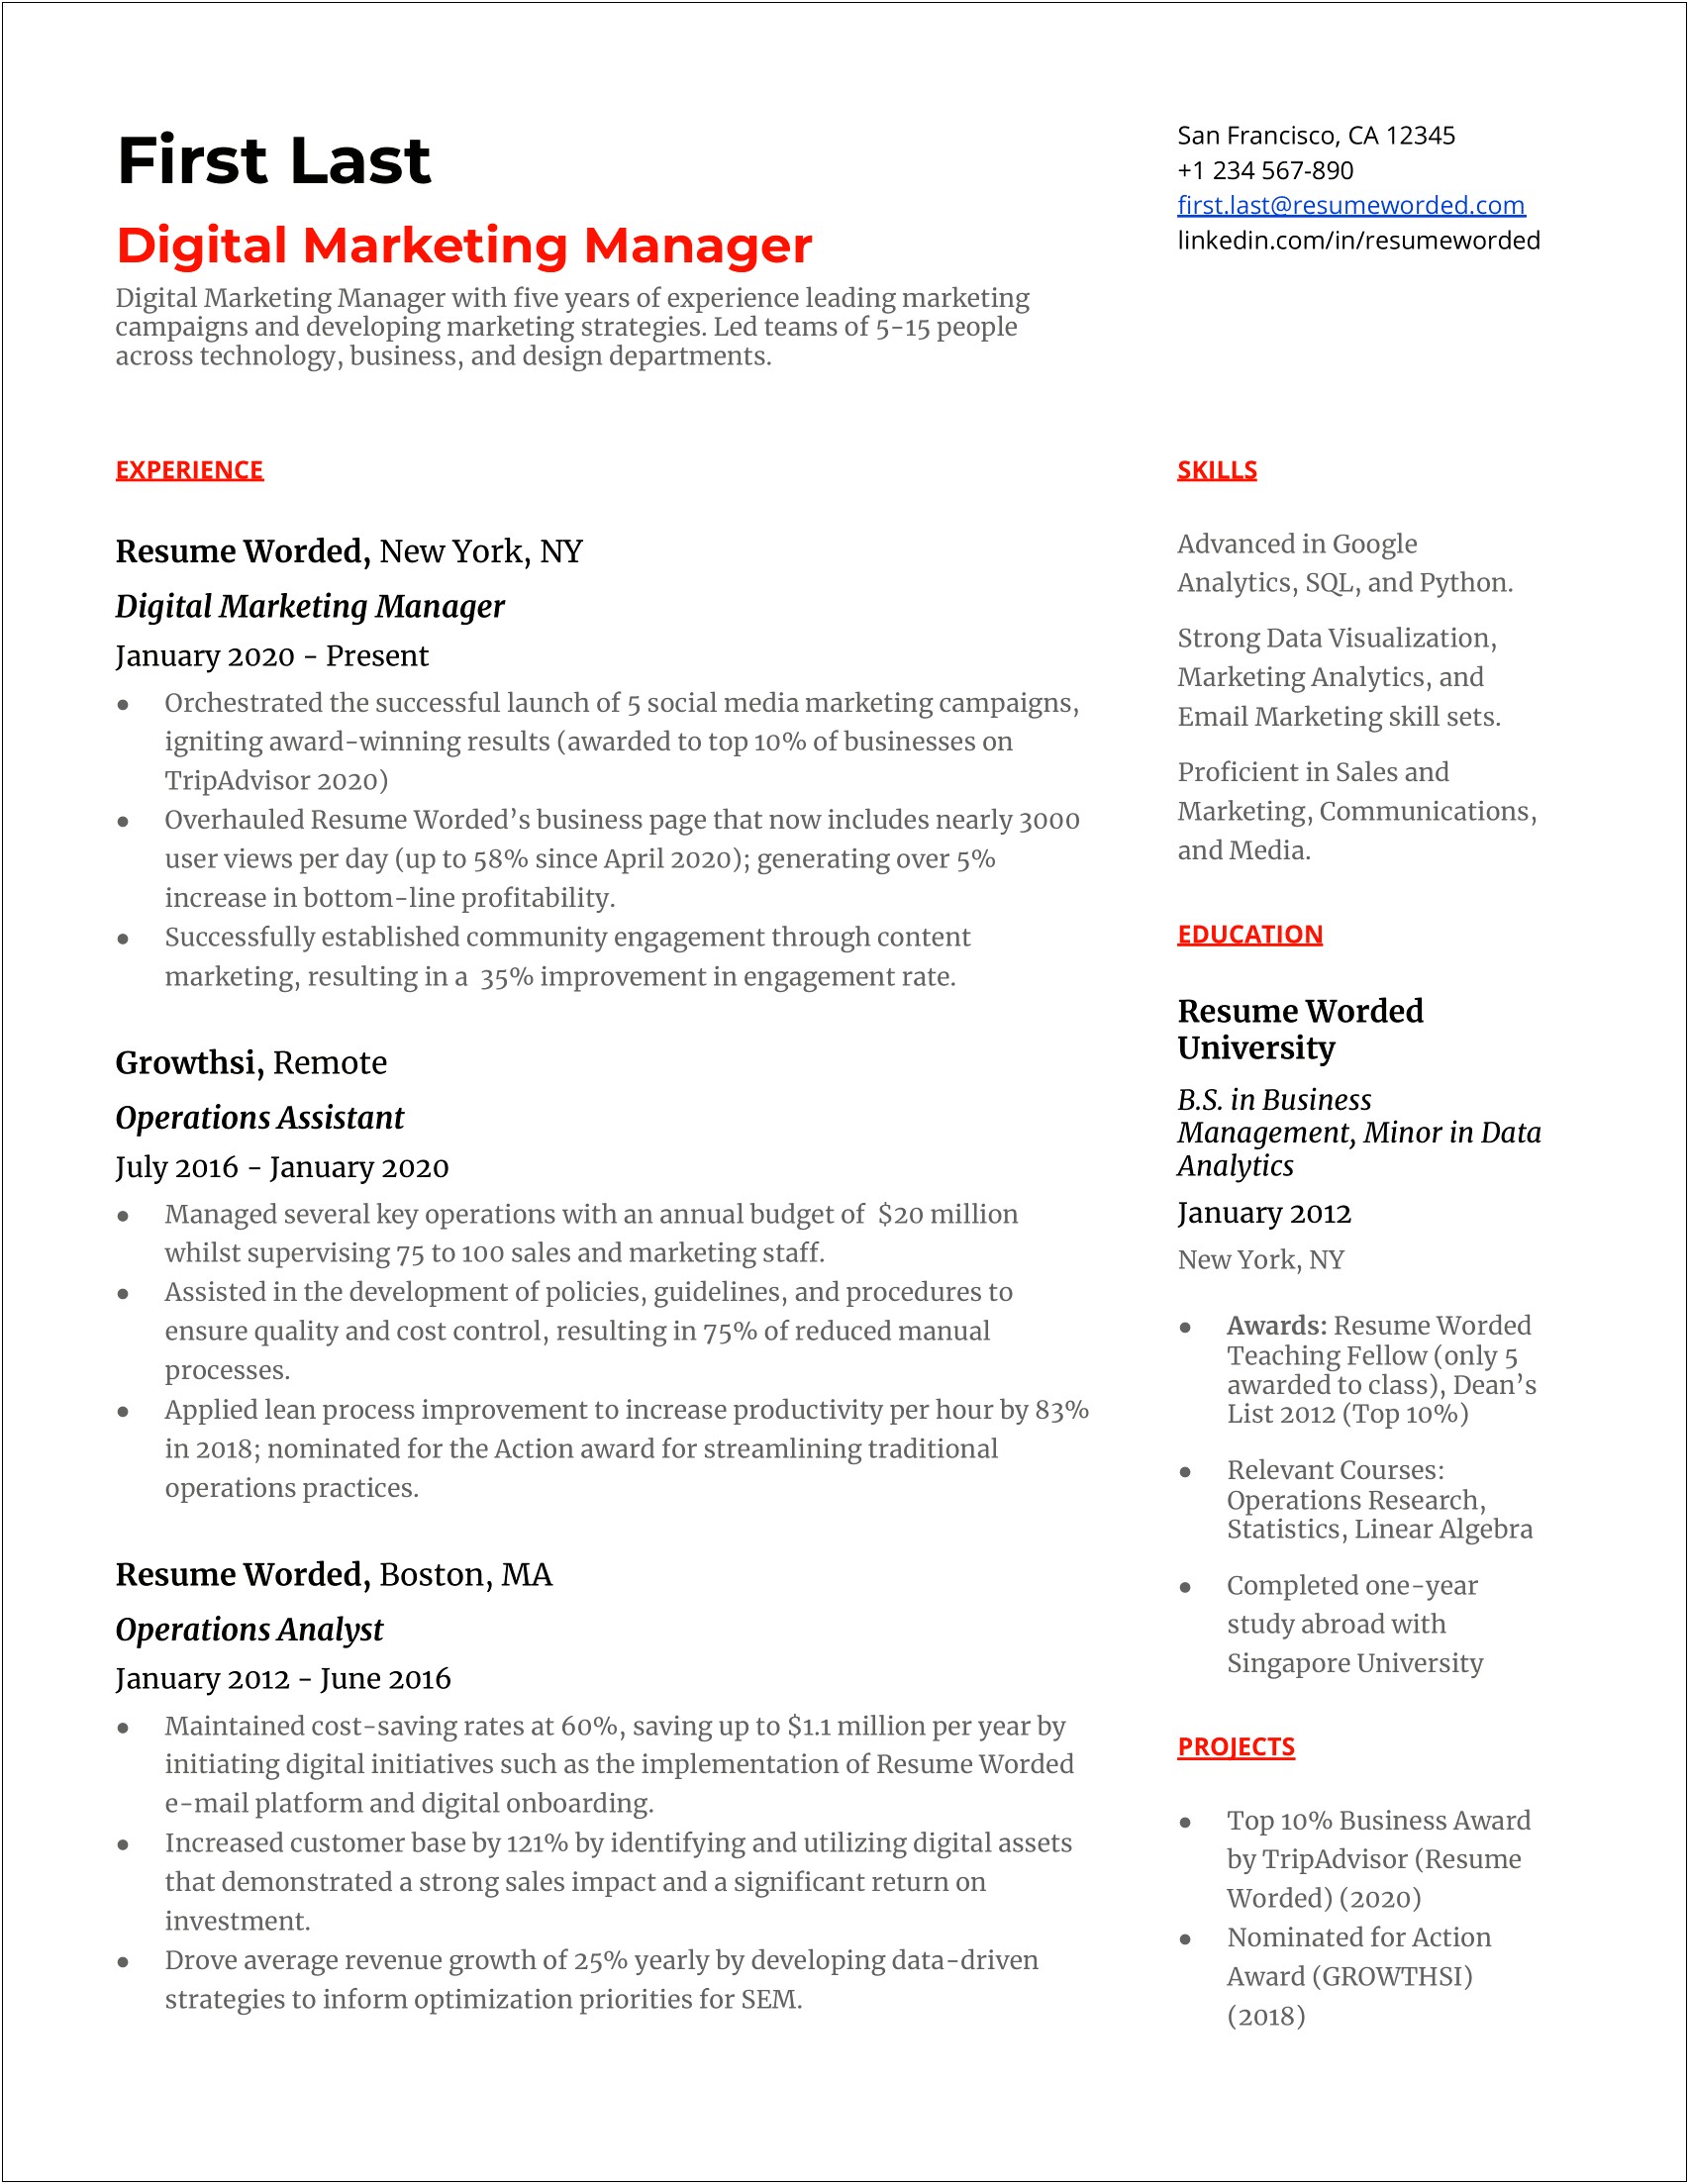 Resume Description Fo Digital Media & Marketing